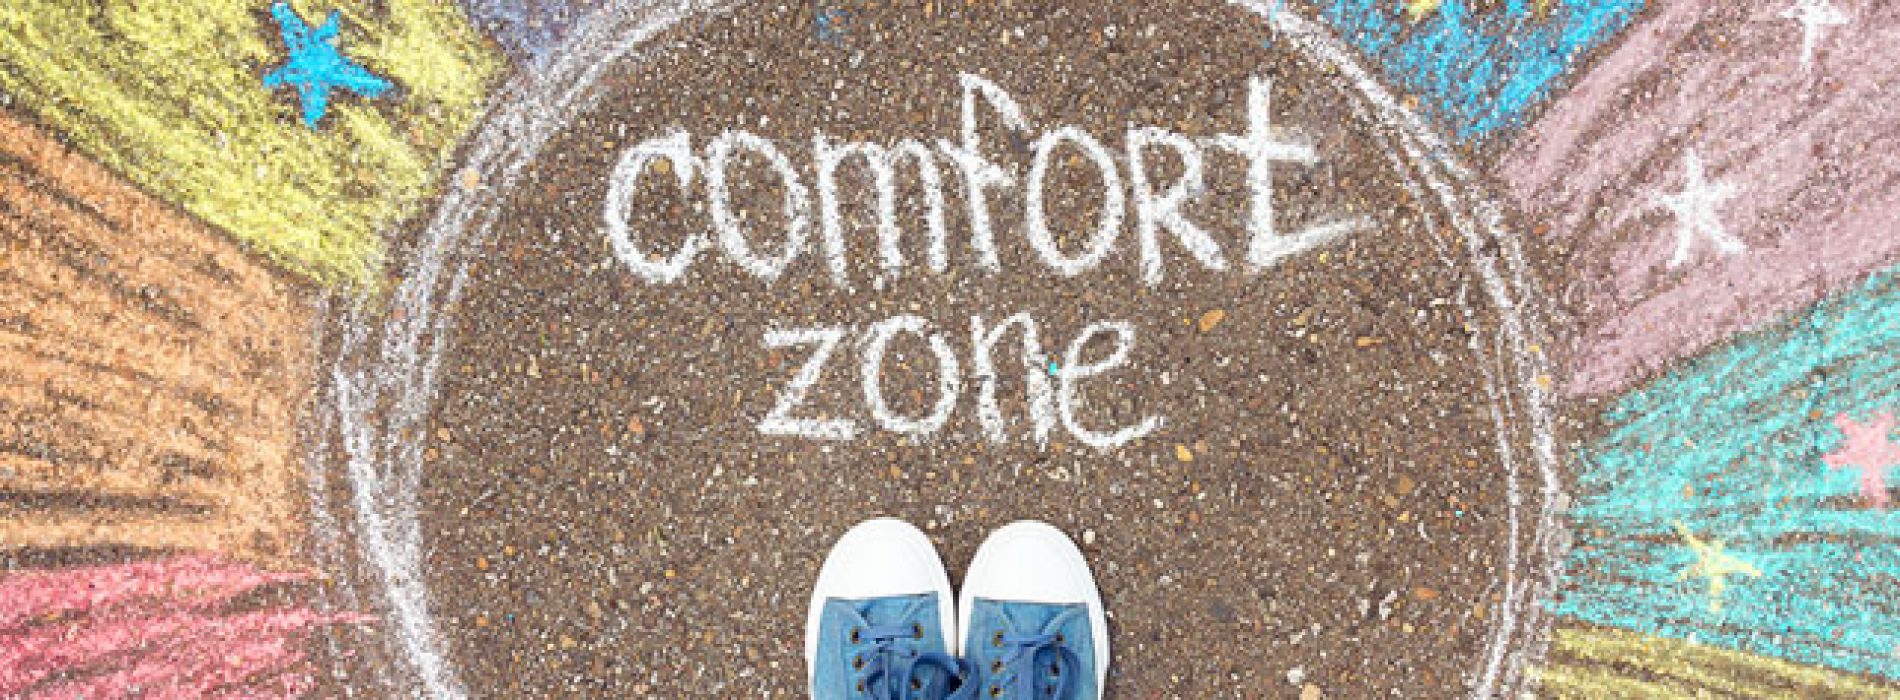 Comfort zone, quell’anglicismo che indica piacevole benessere